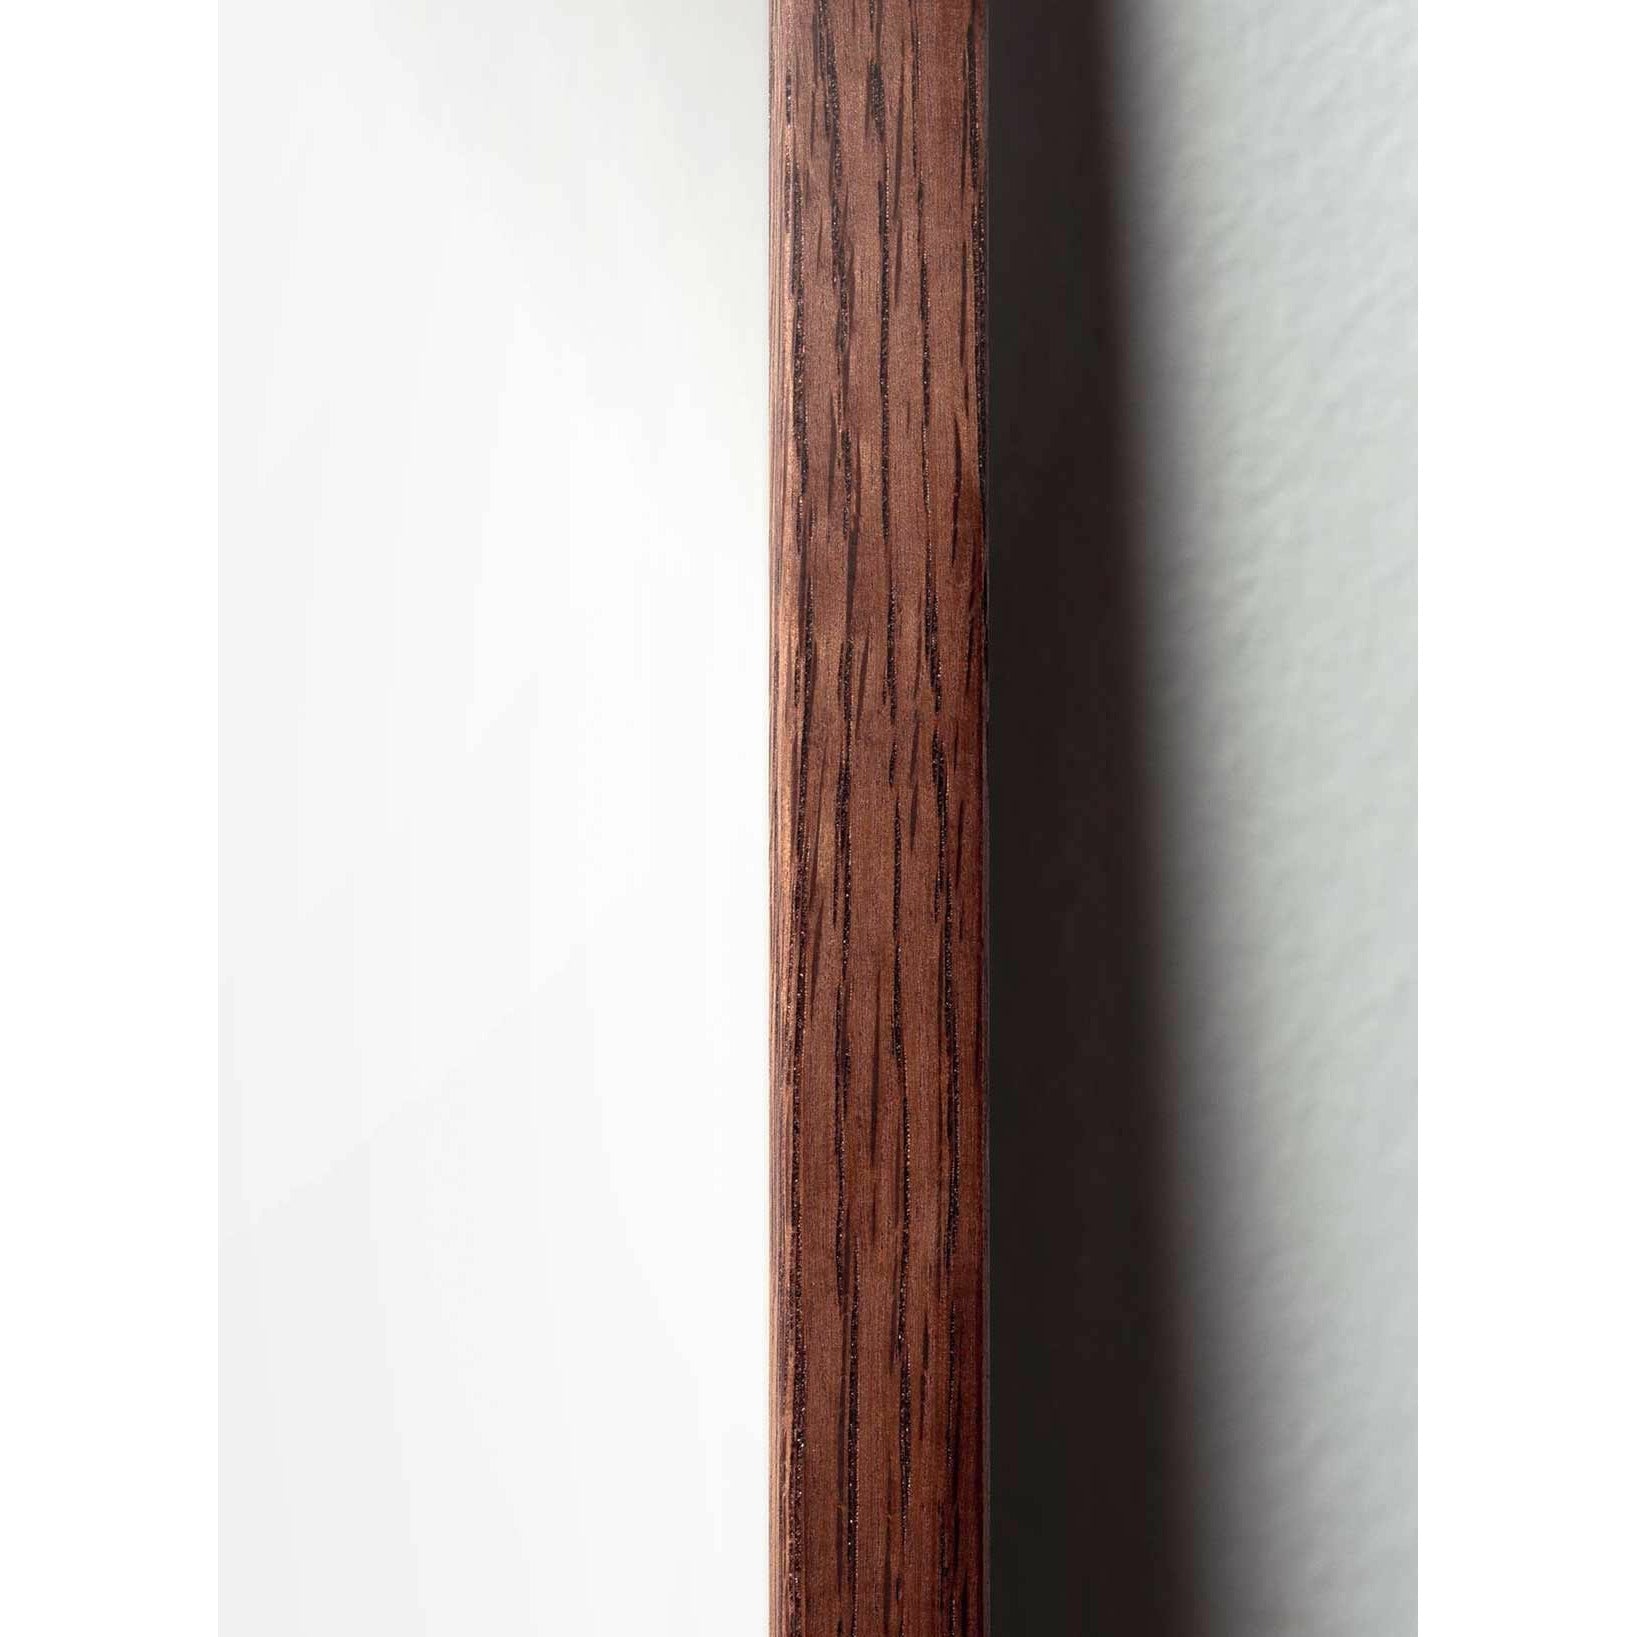 Póster clásico de cono de pino de creación, marco hecho de madera oscura de 50x70 cm, fondo de color arena